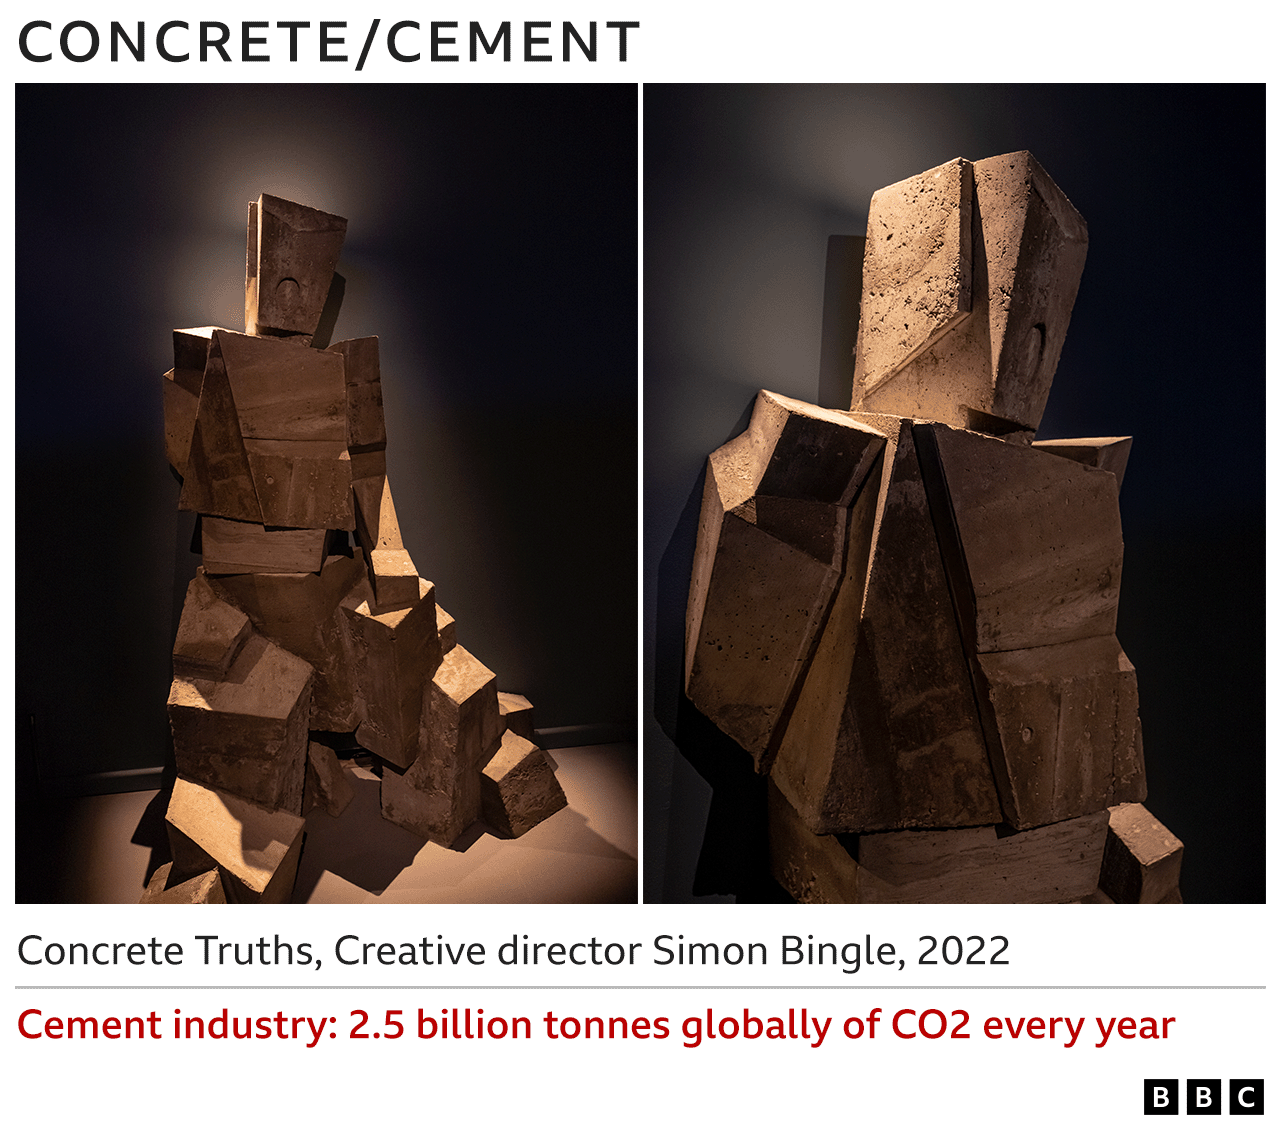 Образы бетонной скульптуры - Concrete Truths, Саймон Бингл, 2022 - Цементная промышленность 2.5 миллиардов тонн CO2 ежегодно